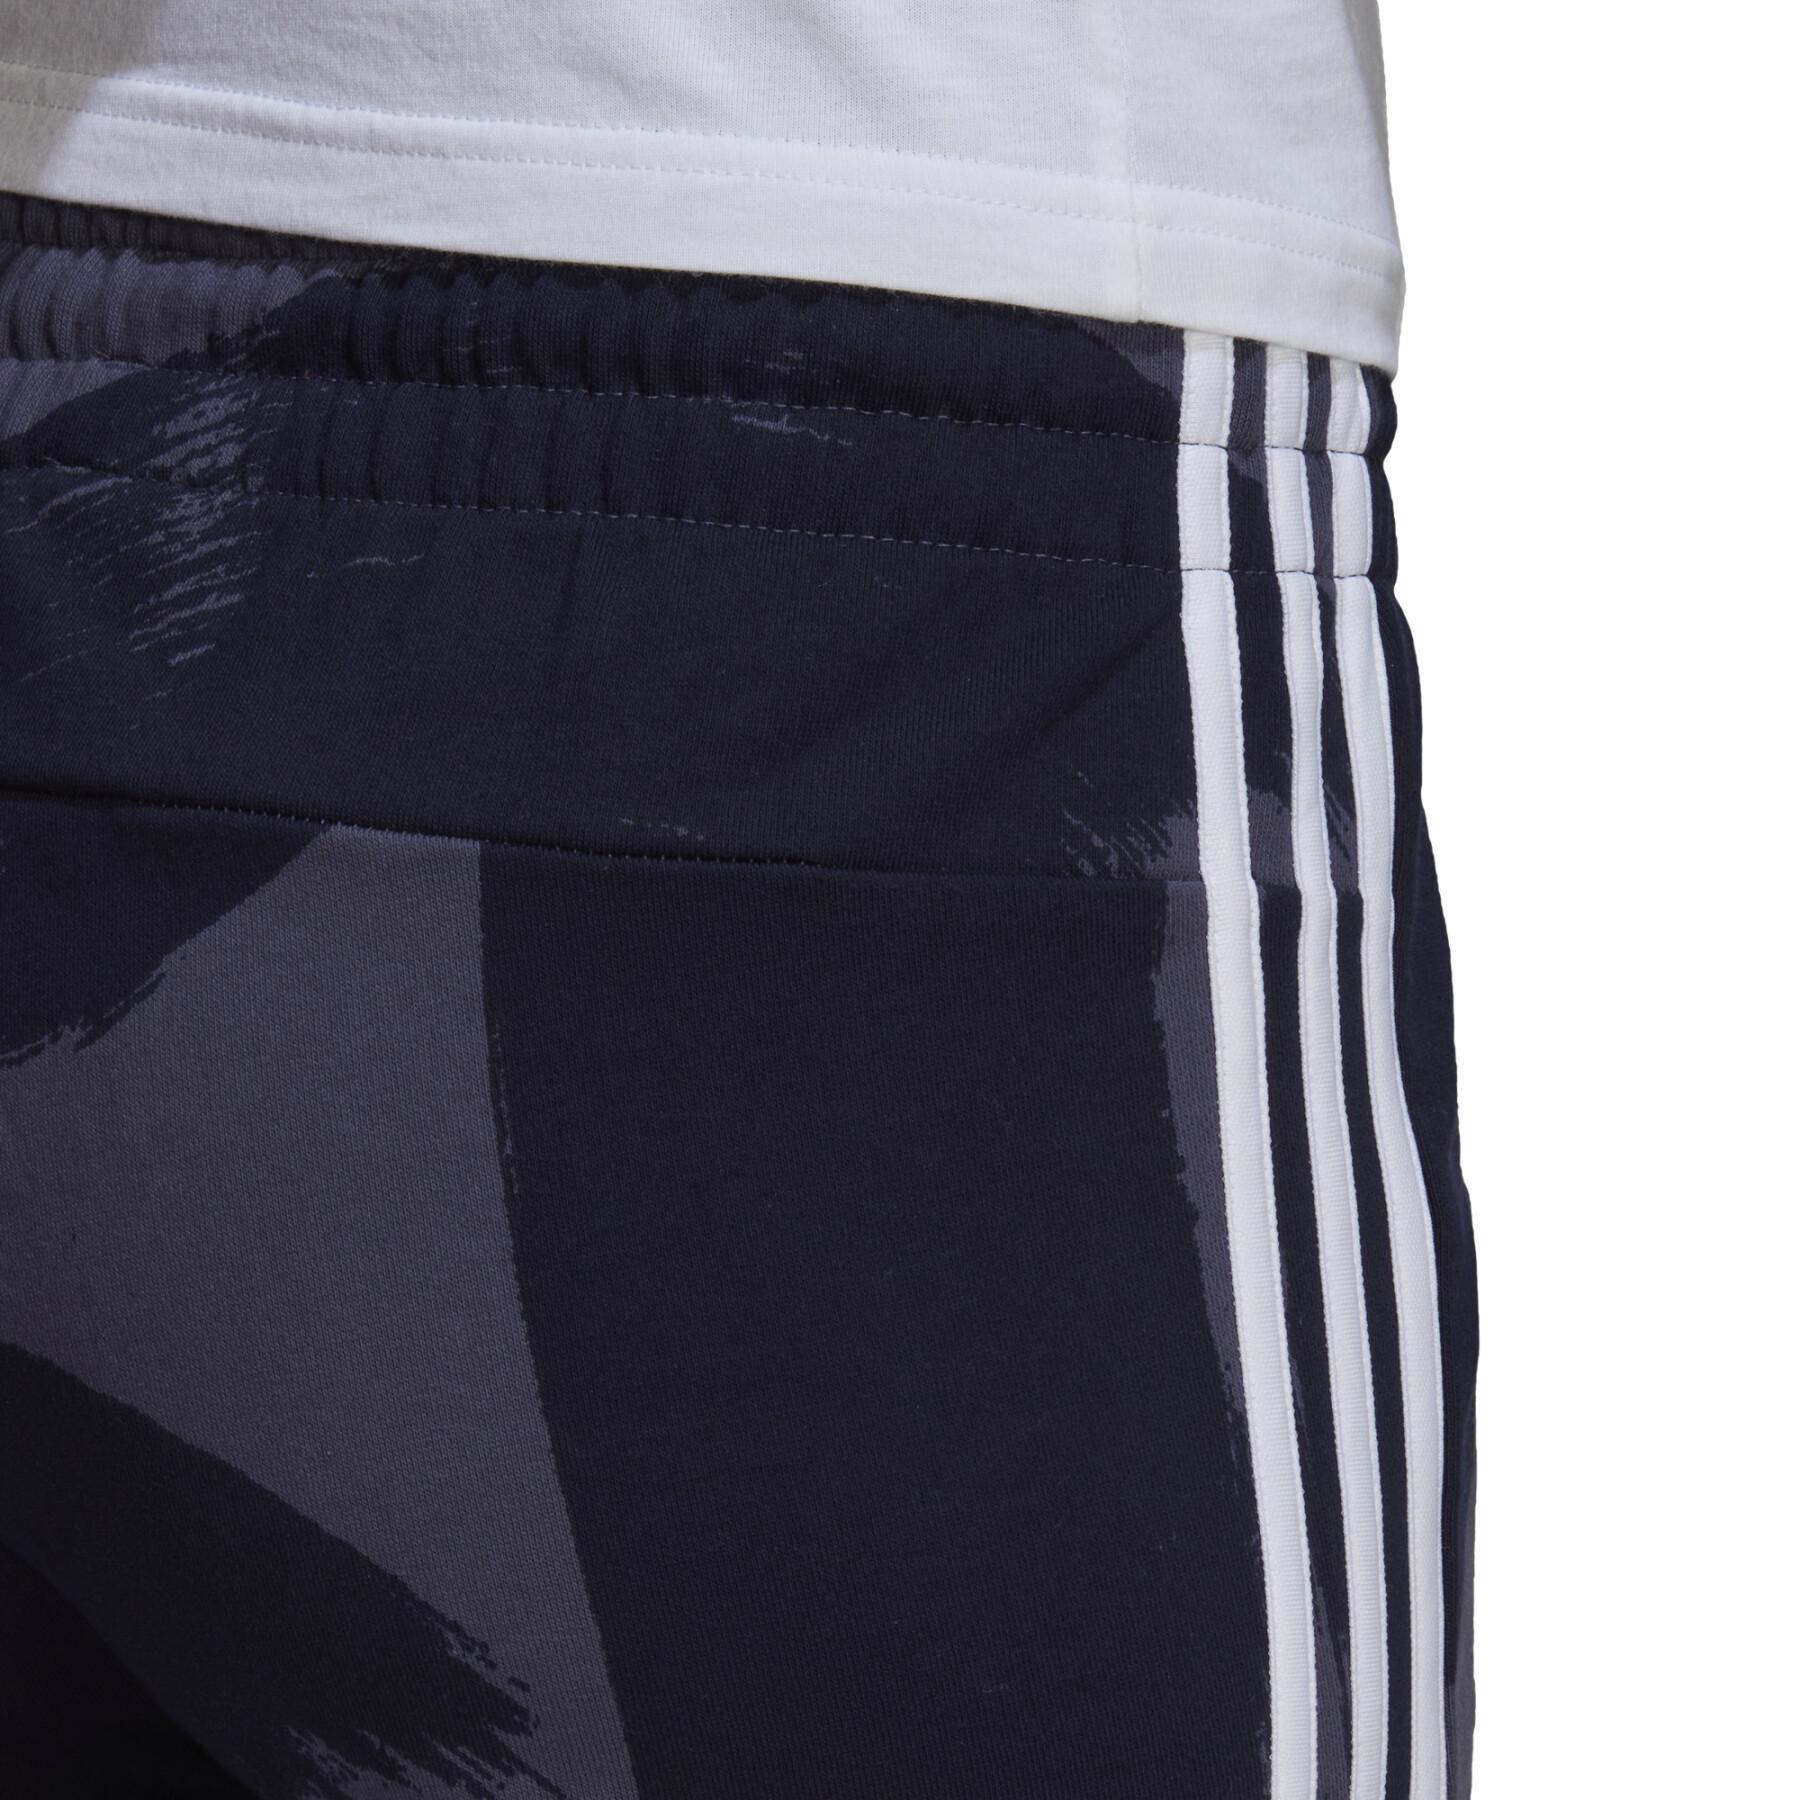 Shorts för kvinnor adidas Essentials Print 3-Stripes